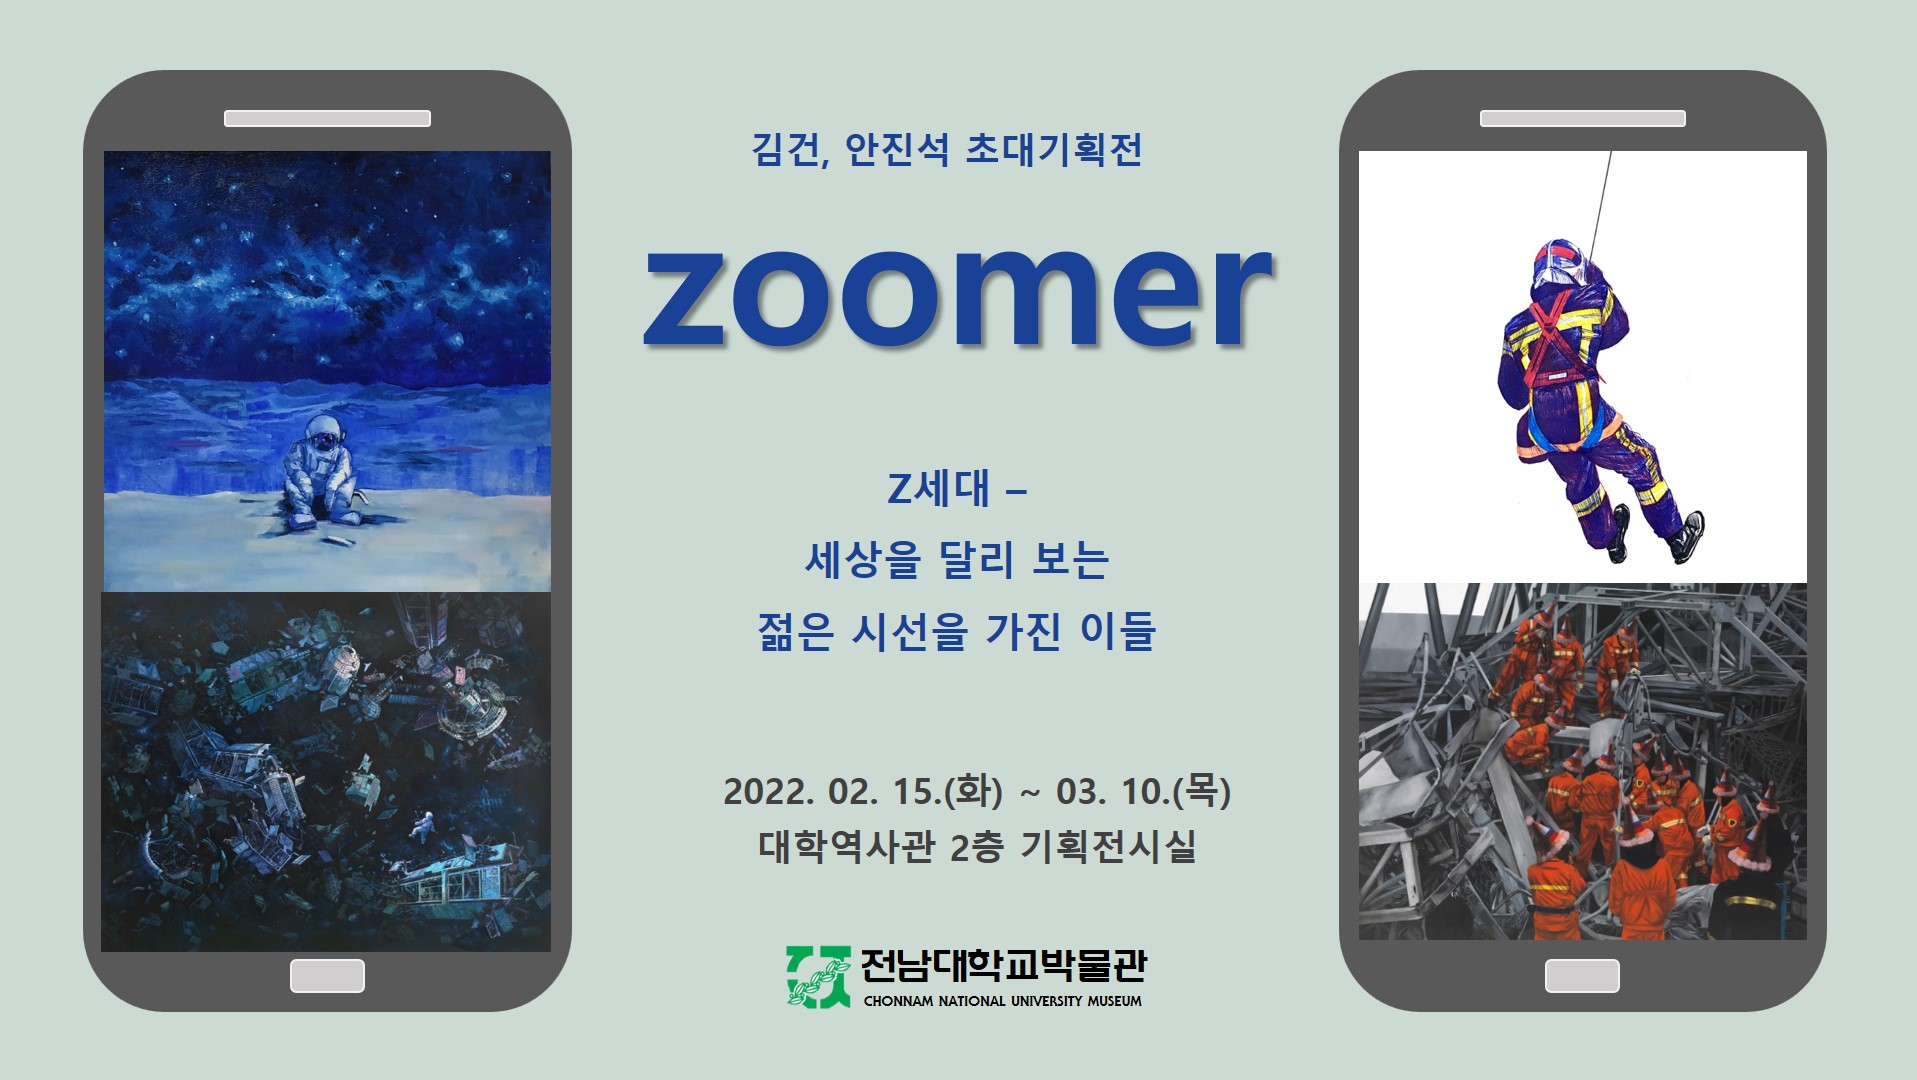 김건ㆍ안진석 초대기획전 “zoomer” 대표이미지